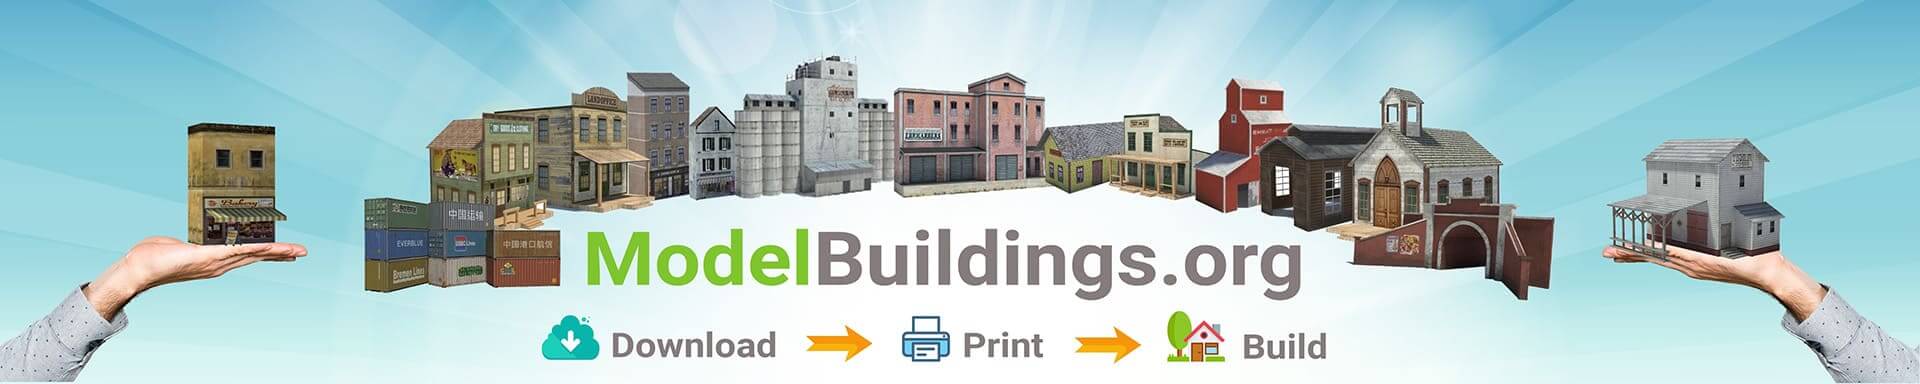 Model Buildings